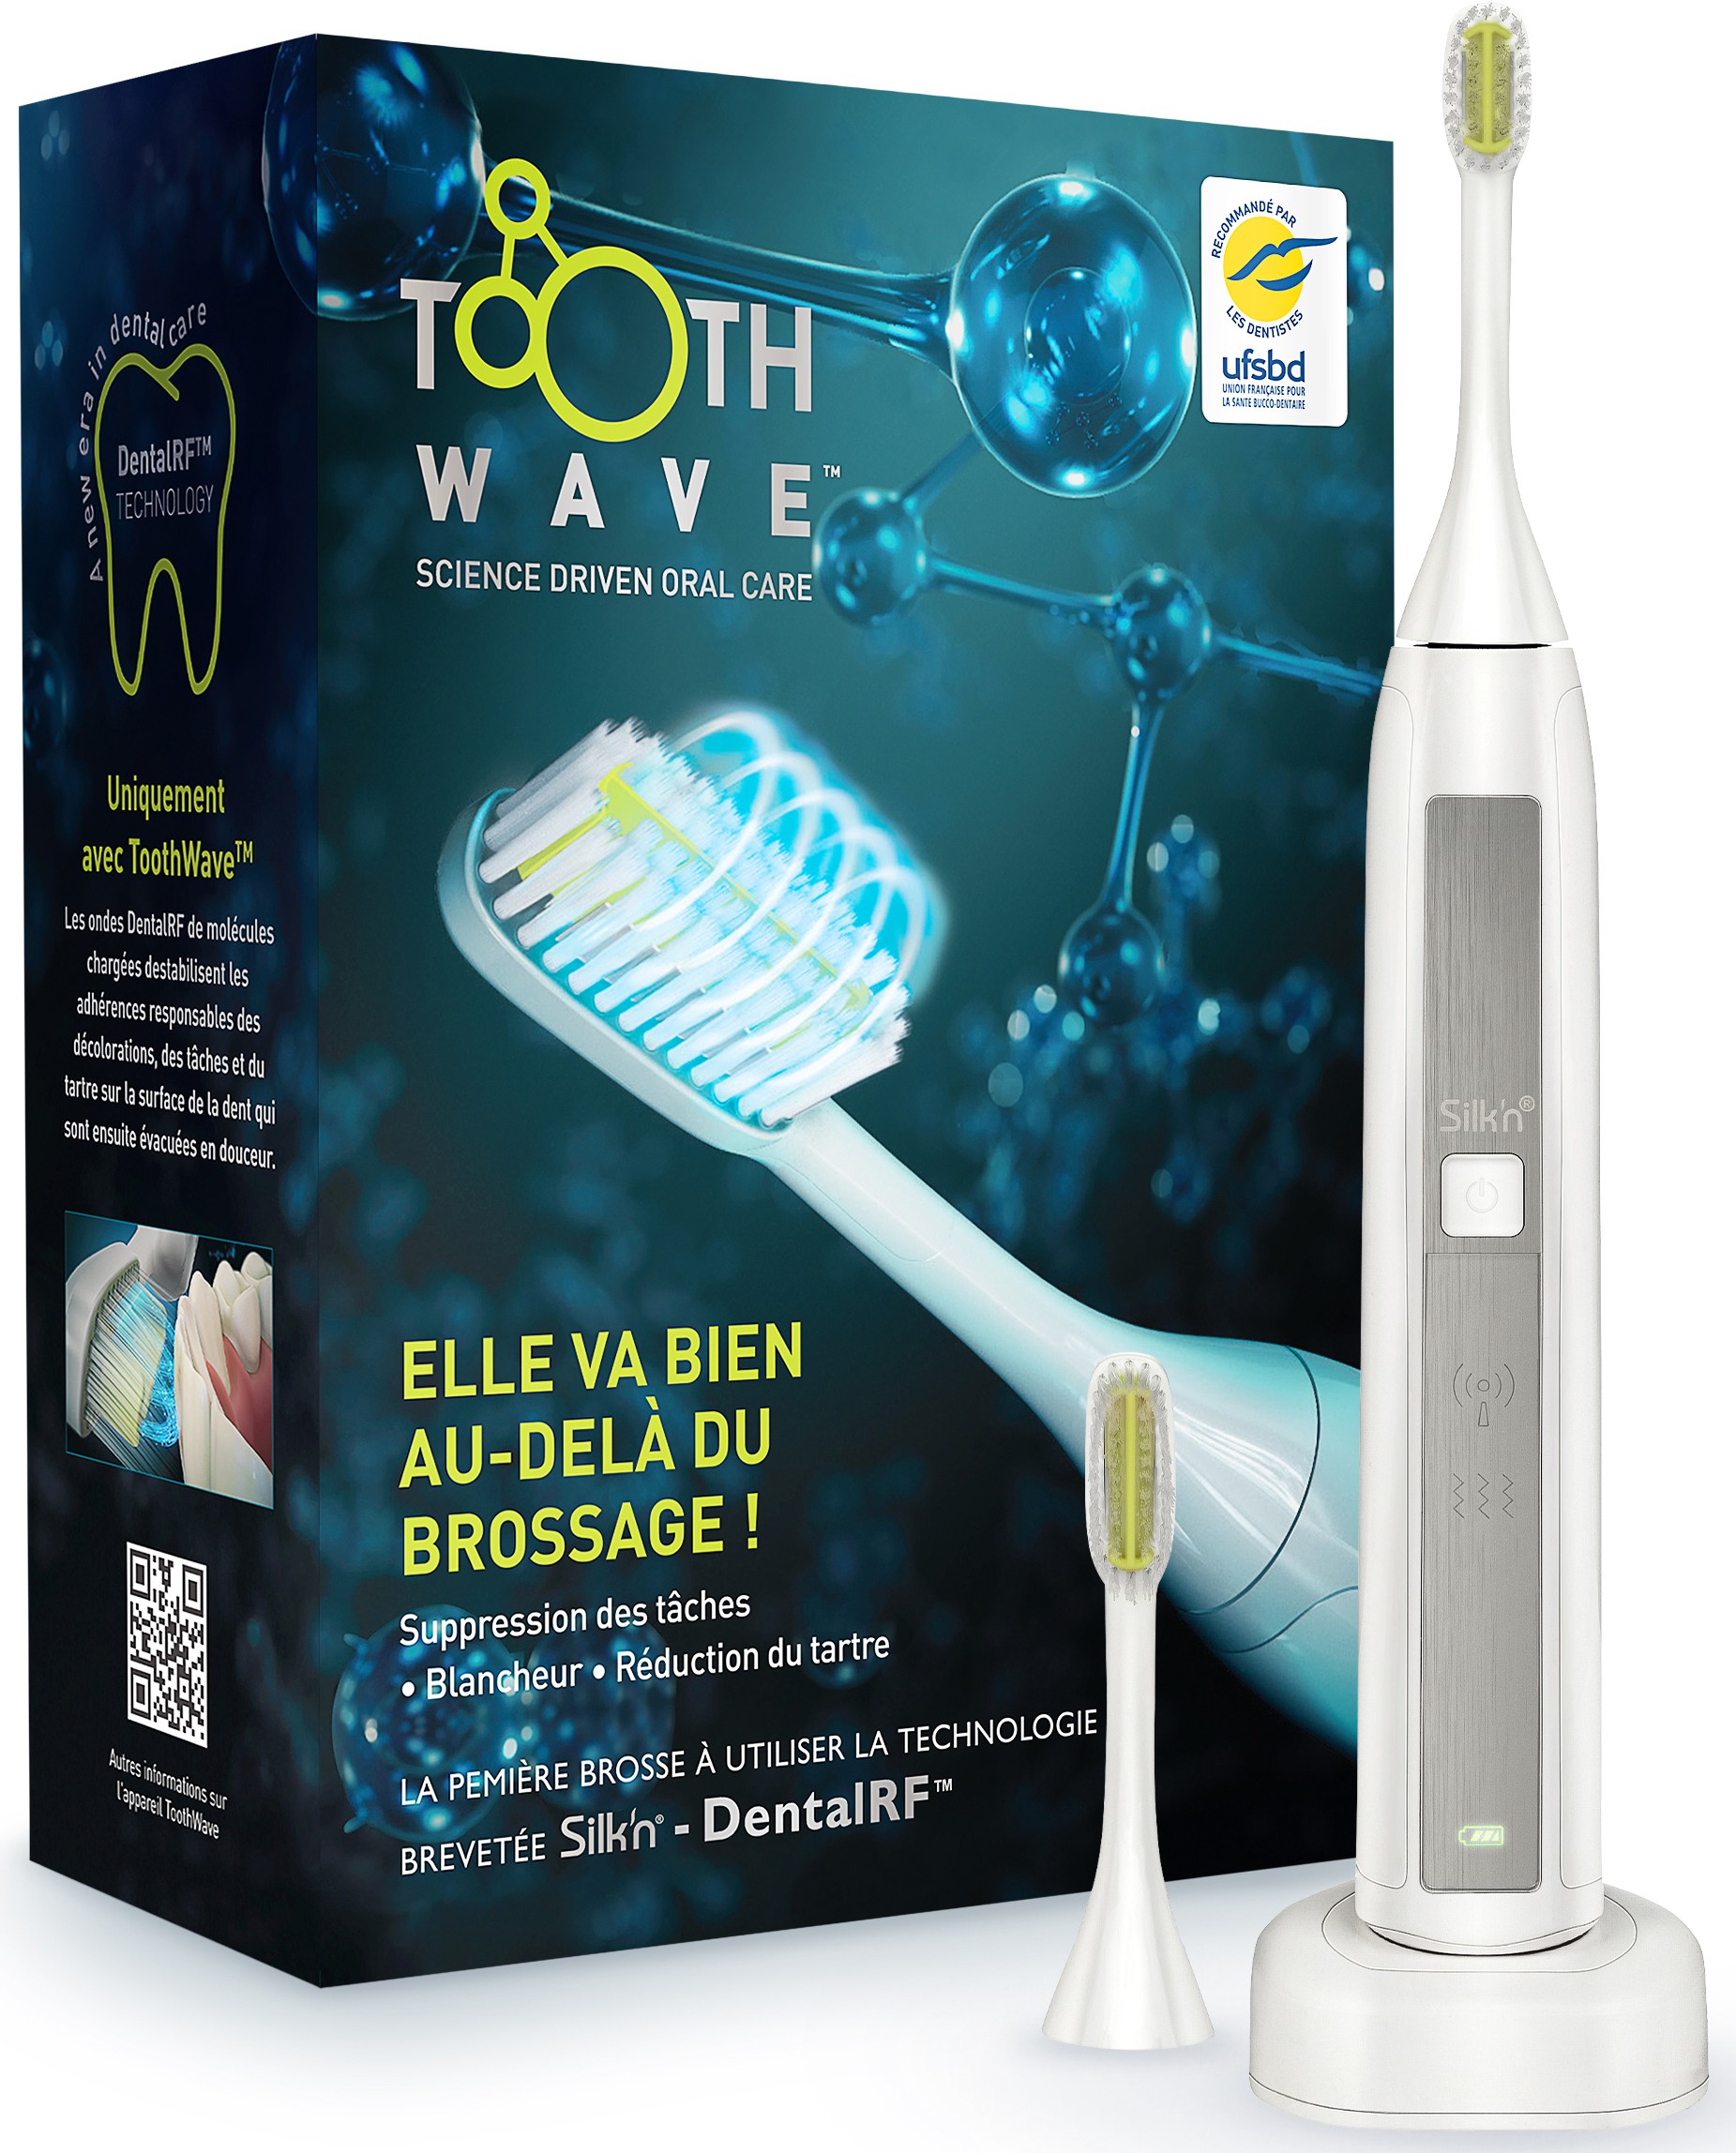 SILKN Brosse à dent électrique Toothwave mouvements Sonic  TW1PE1001